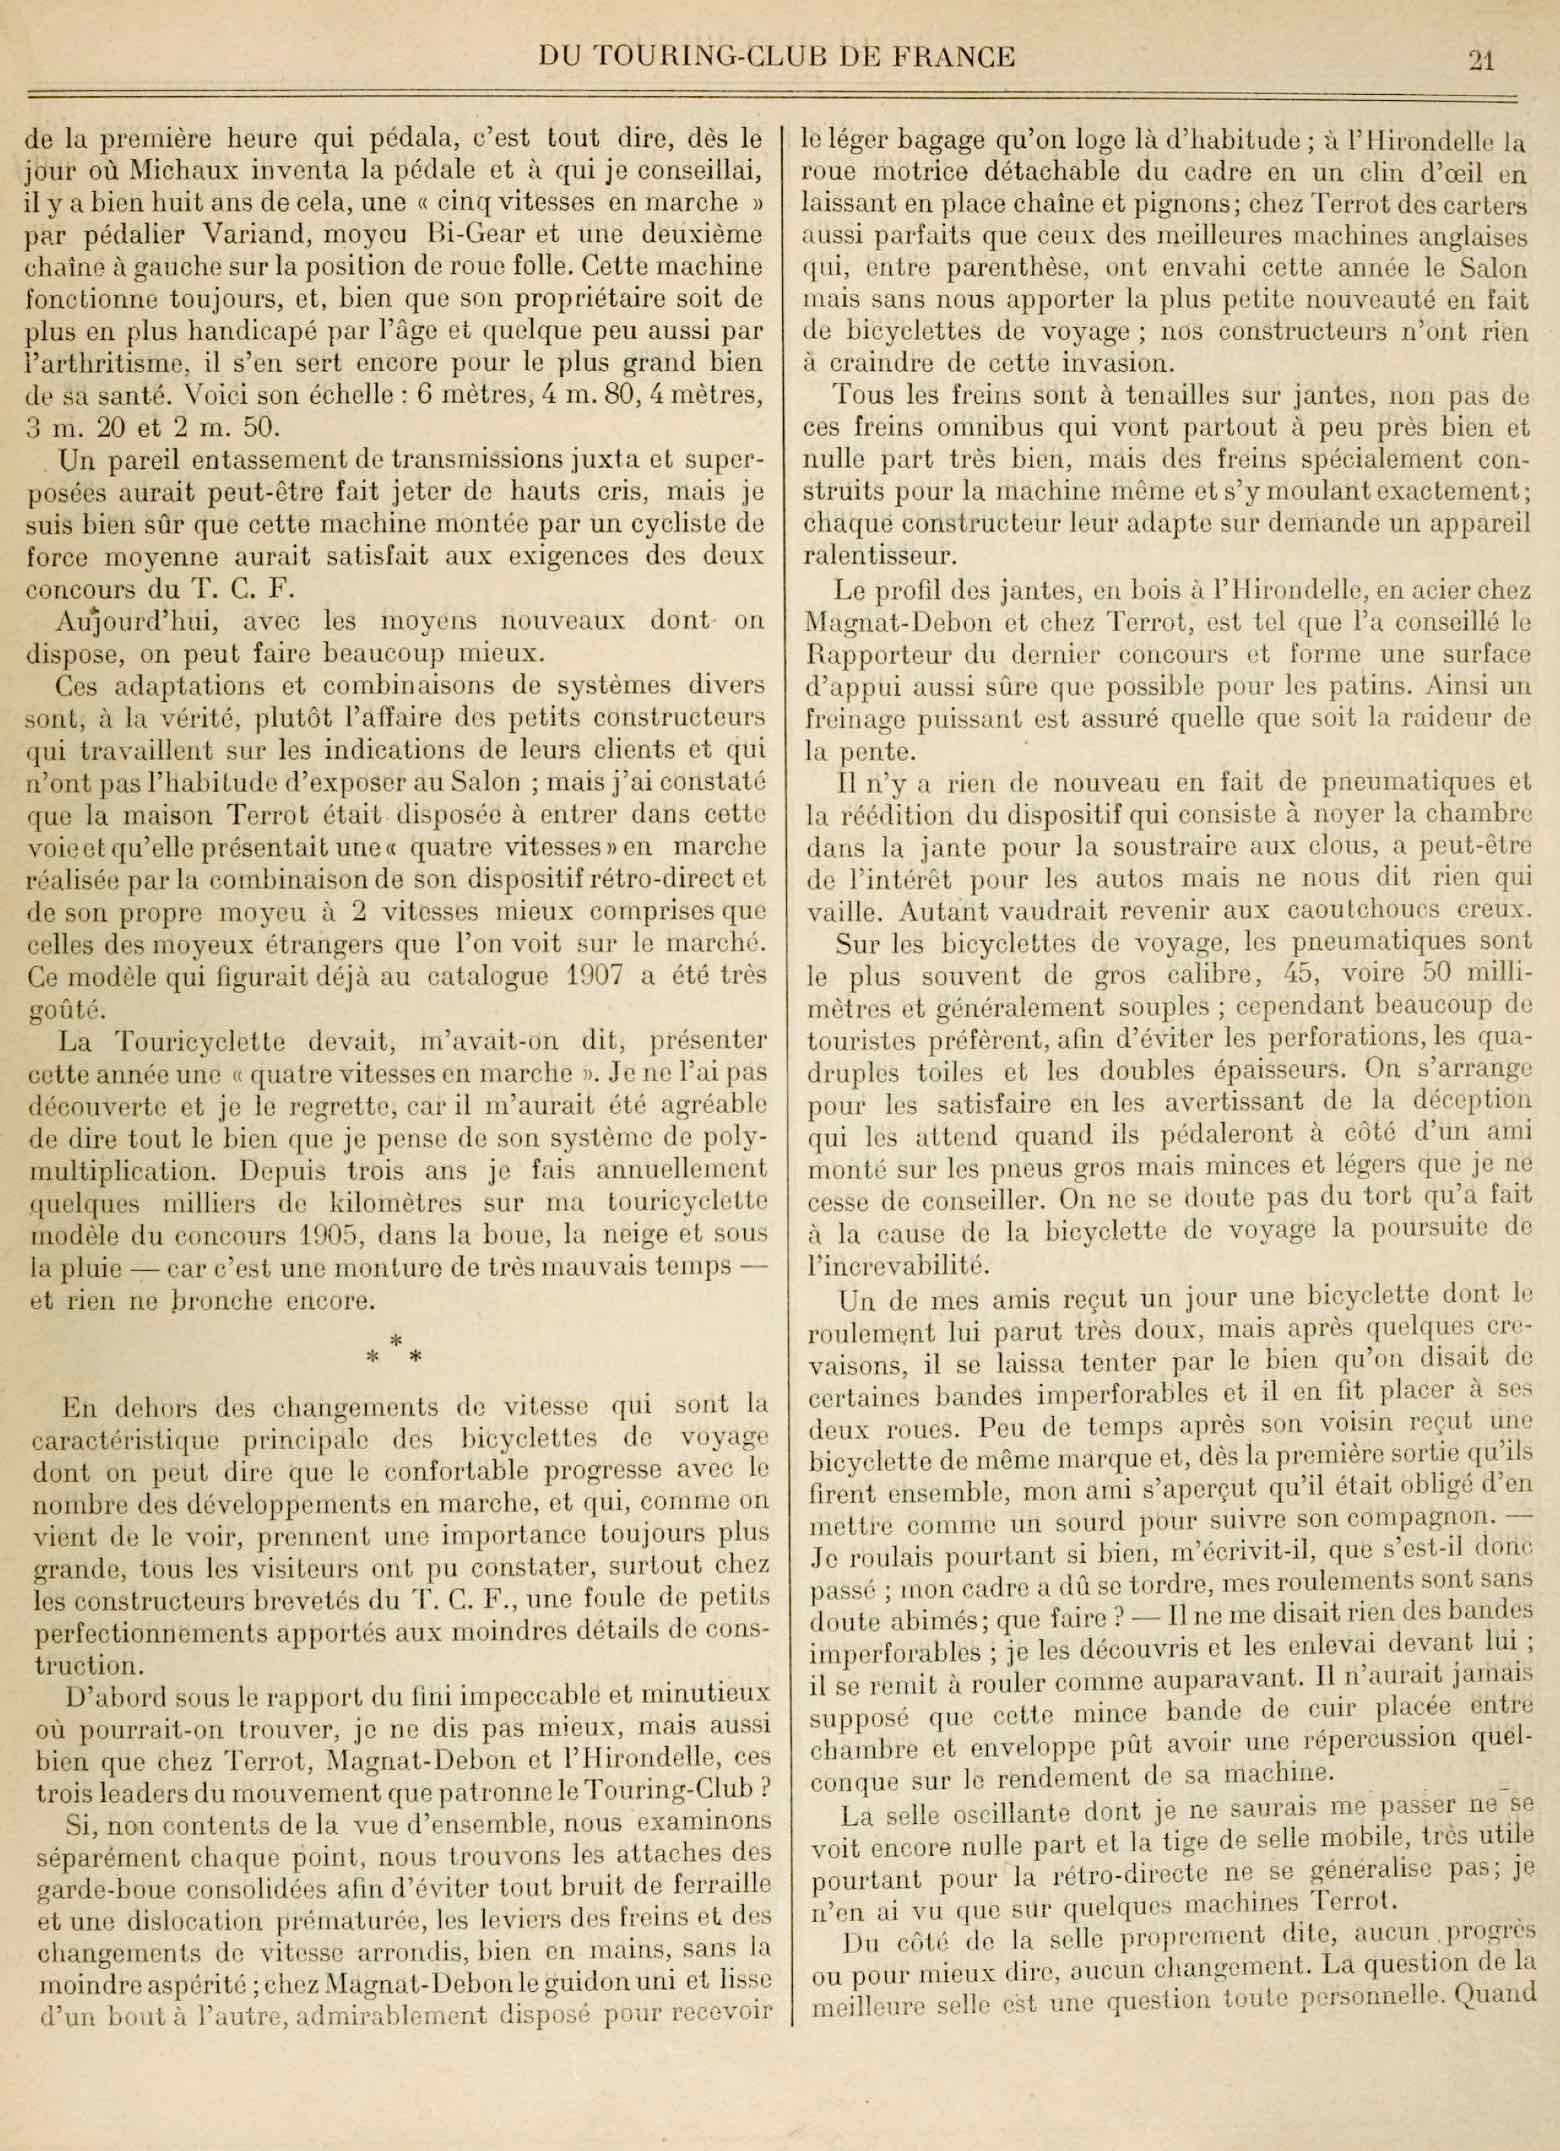 T.C.F. Revue Mensuelle January 1908 - La Bicyclette de Voyage au Salon (part II) scan 2 main image